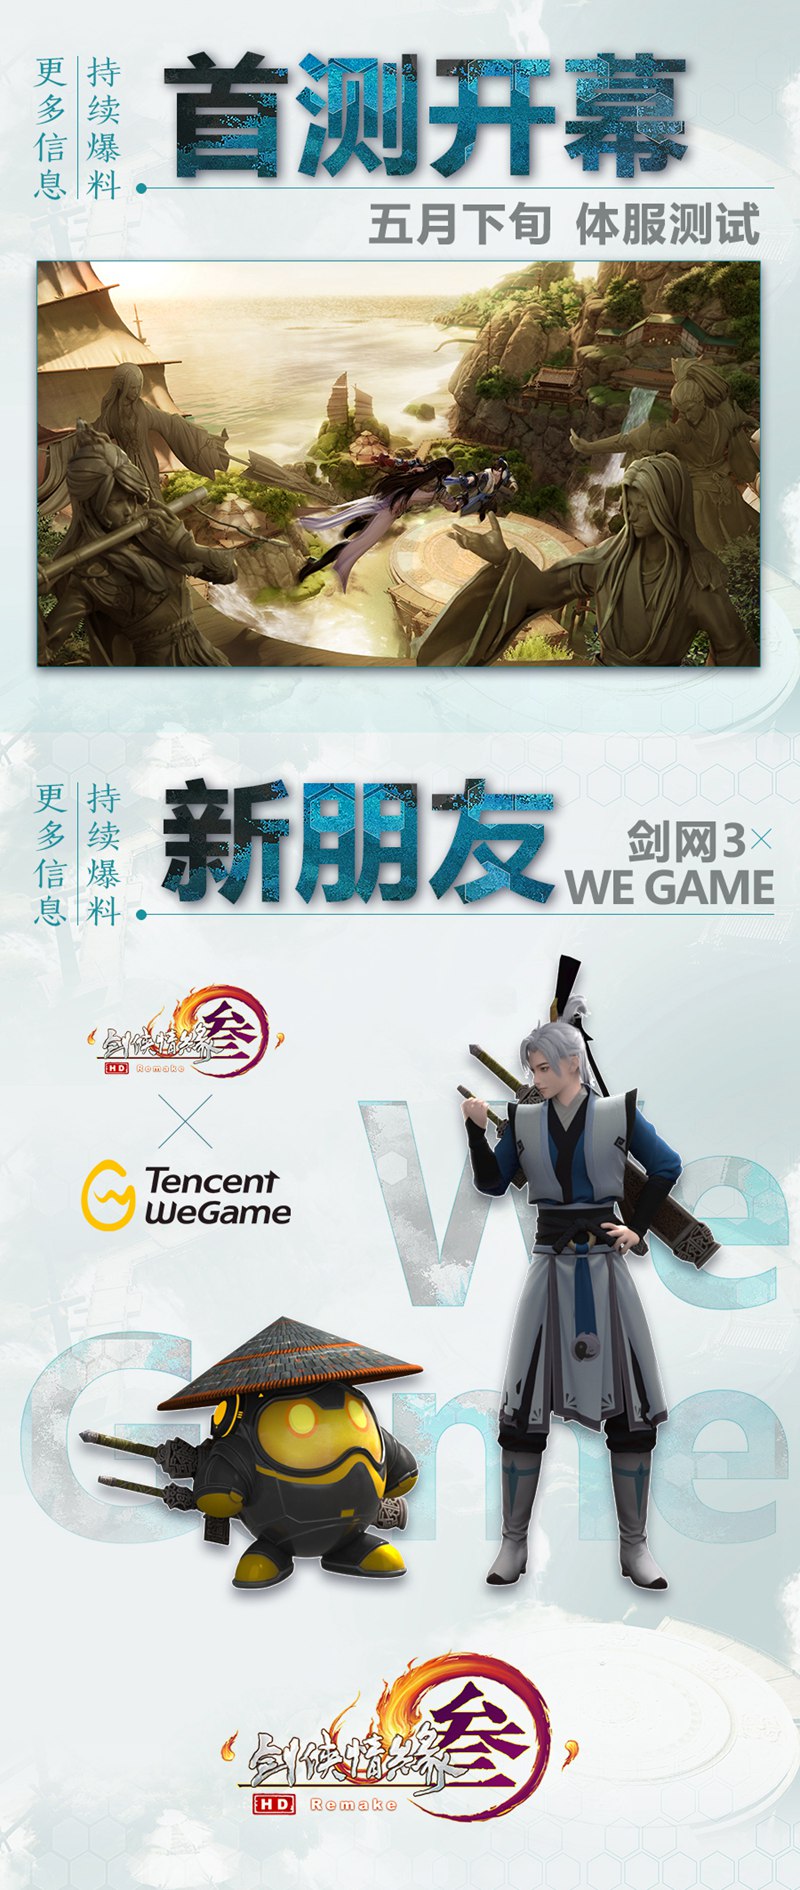 《剑网3》大师赛冠军今日诞生 携手WeGame共闯江湖